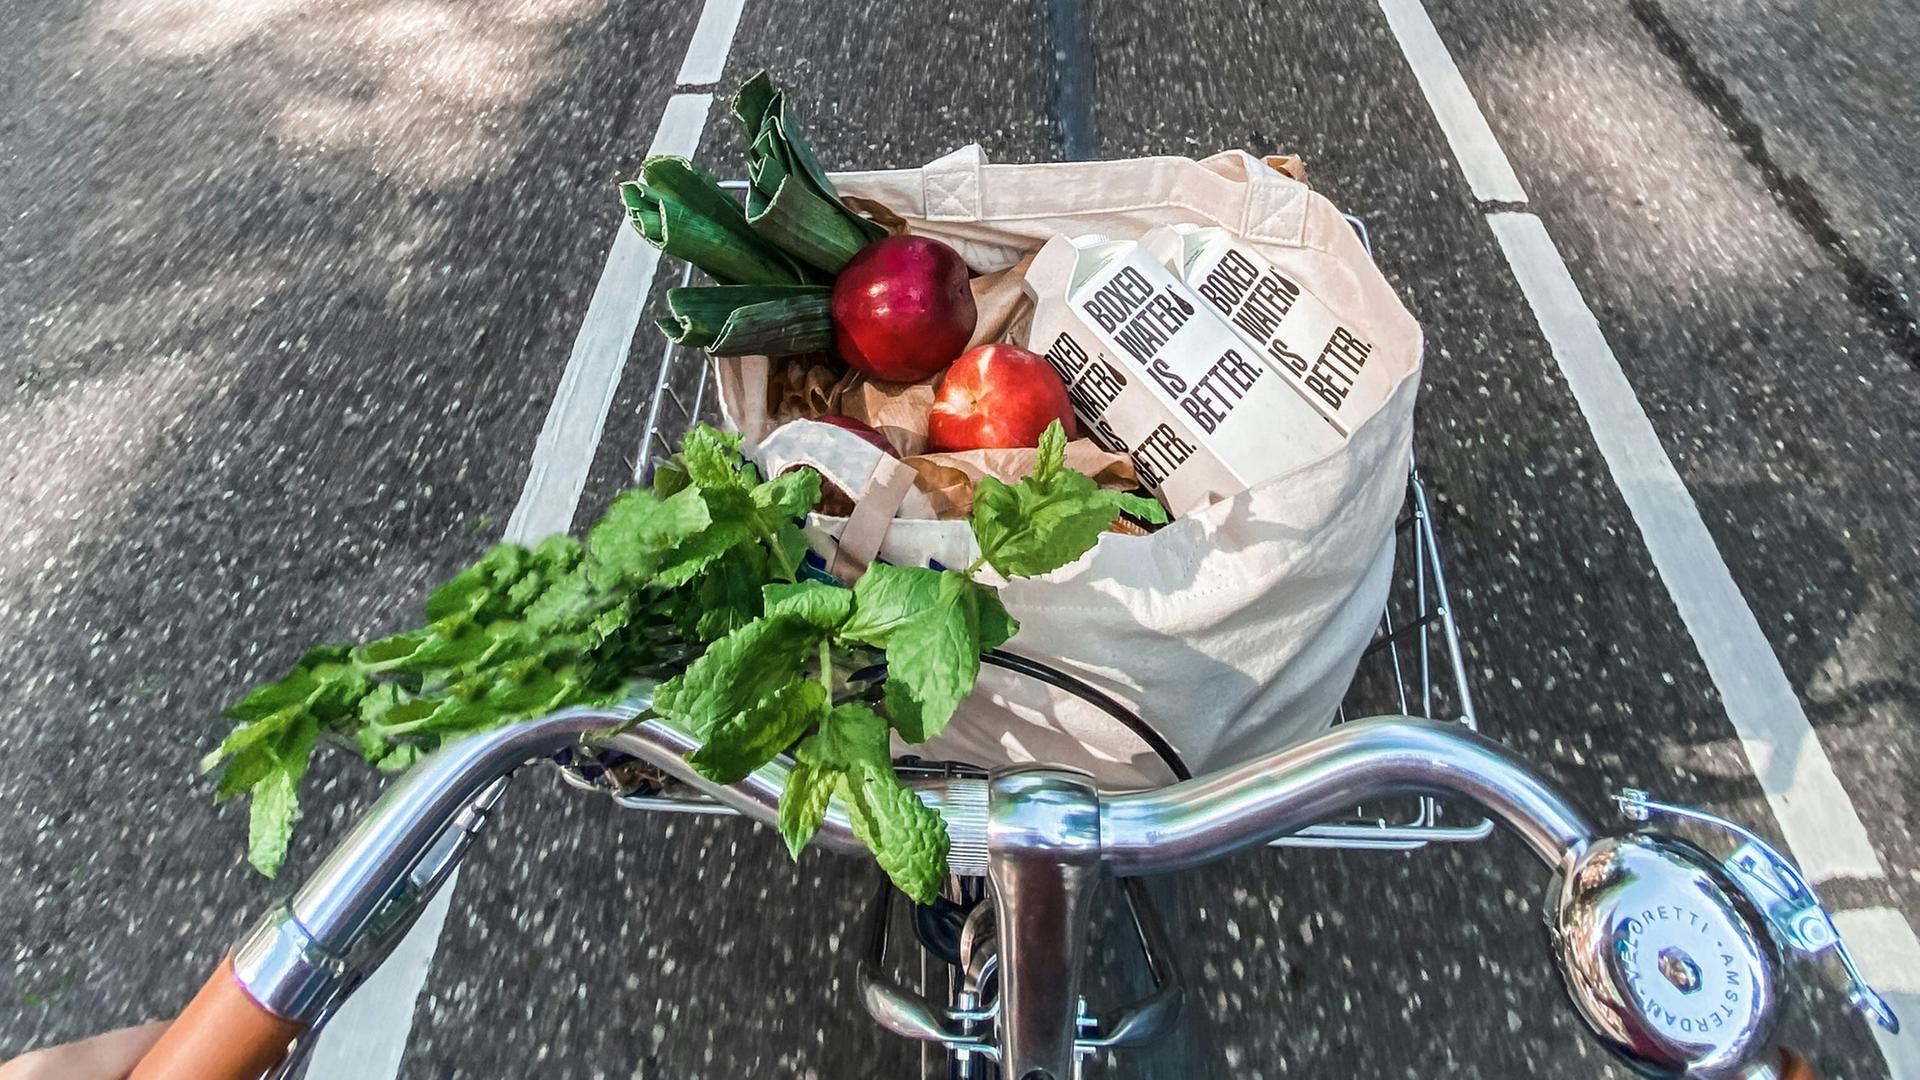 Vogelperspektive auf ein fahrendes Fahrrad, in dessen Korb ein Jutebeutel mit Obst und Gemüse liegt.